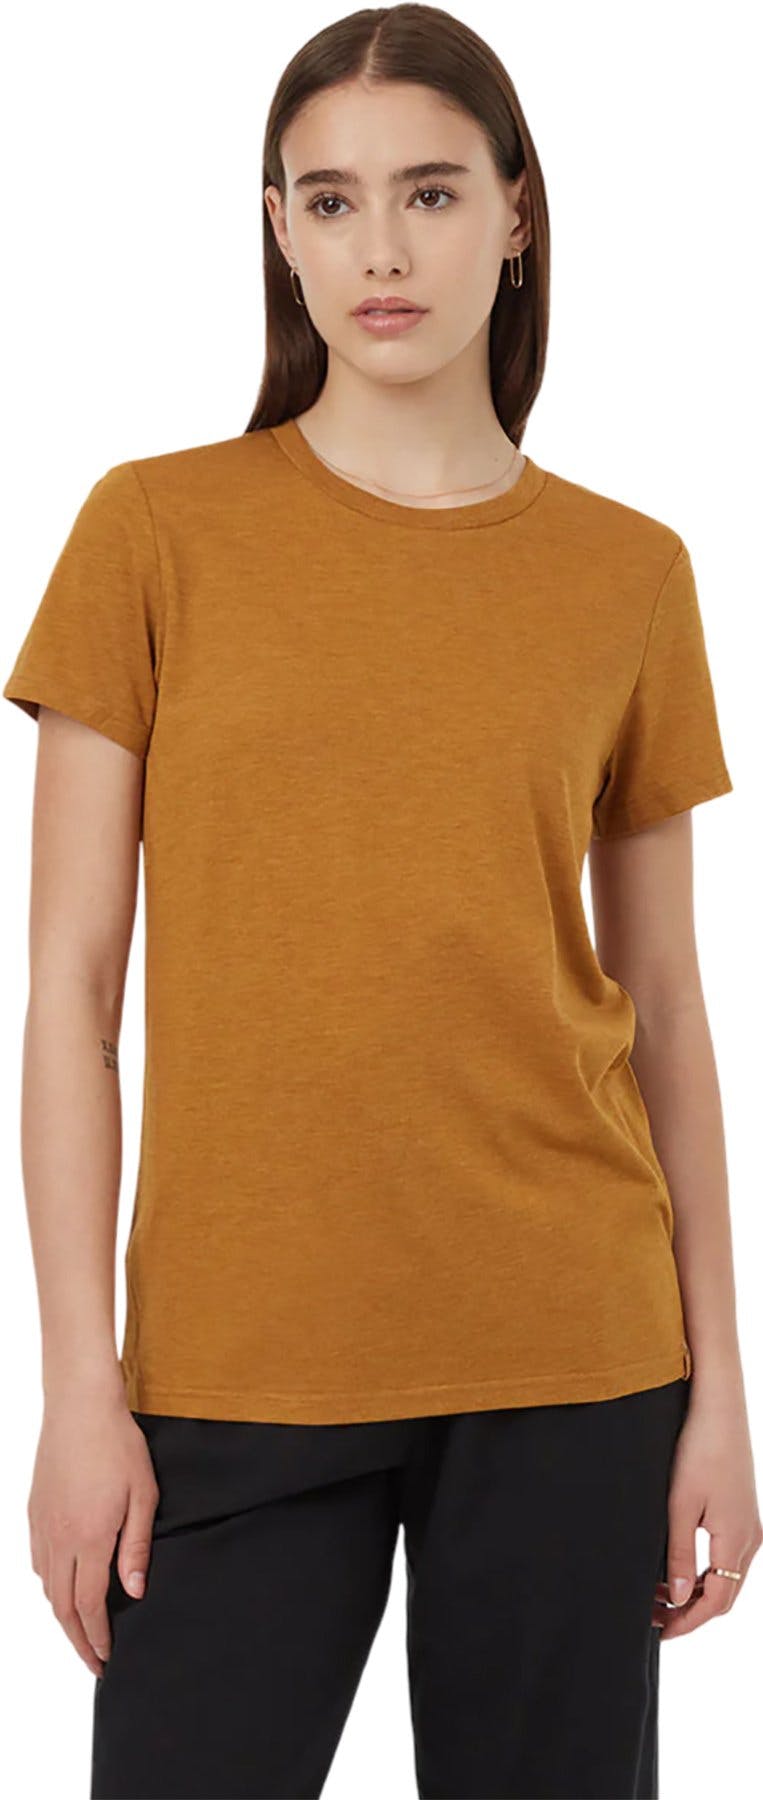 Image de produit pour T-shirt classique TreeBlend - Femme